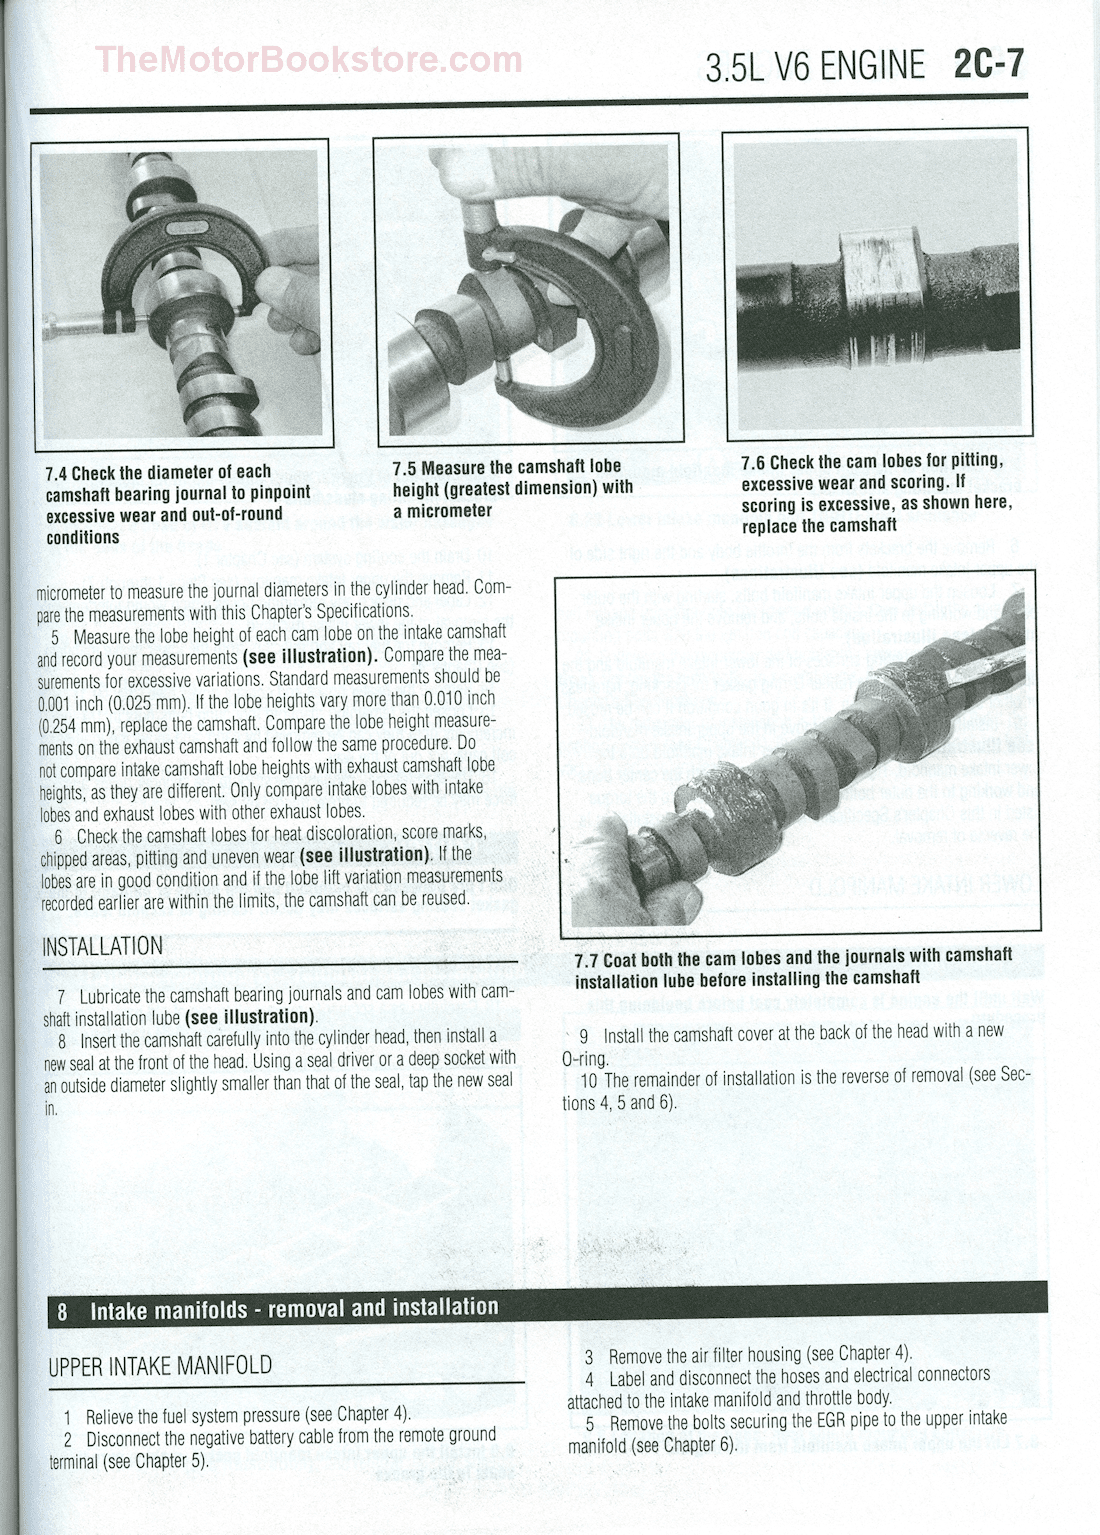 2008 dodge avenger repair manual pdf free